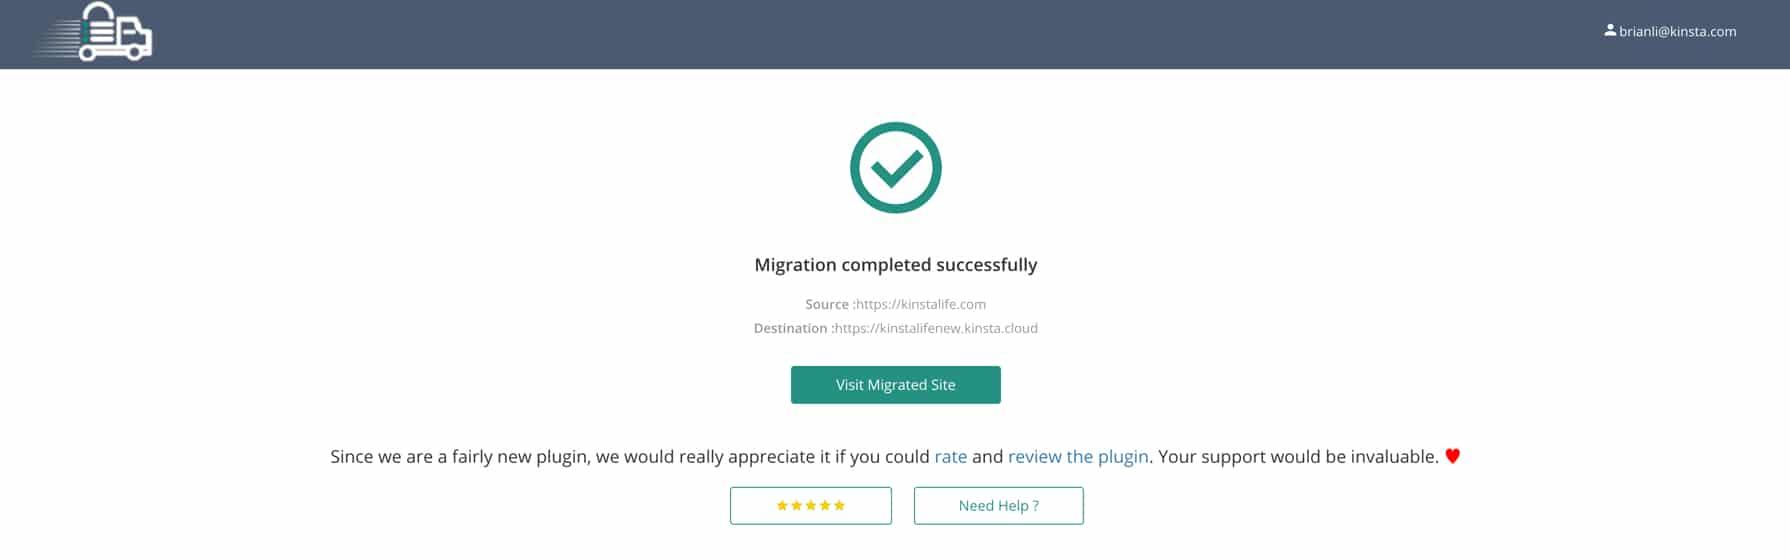 A successful WordPress migration with Migrate Guru.